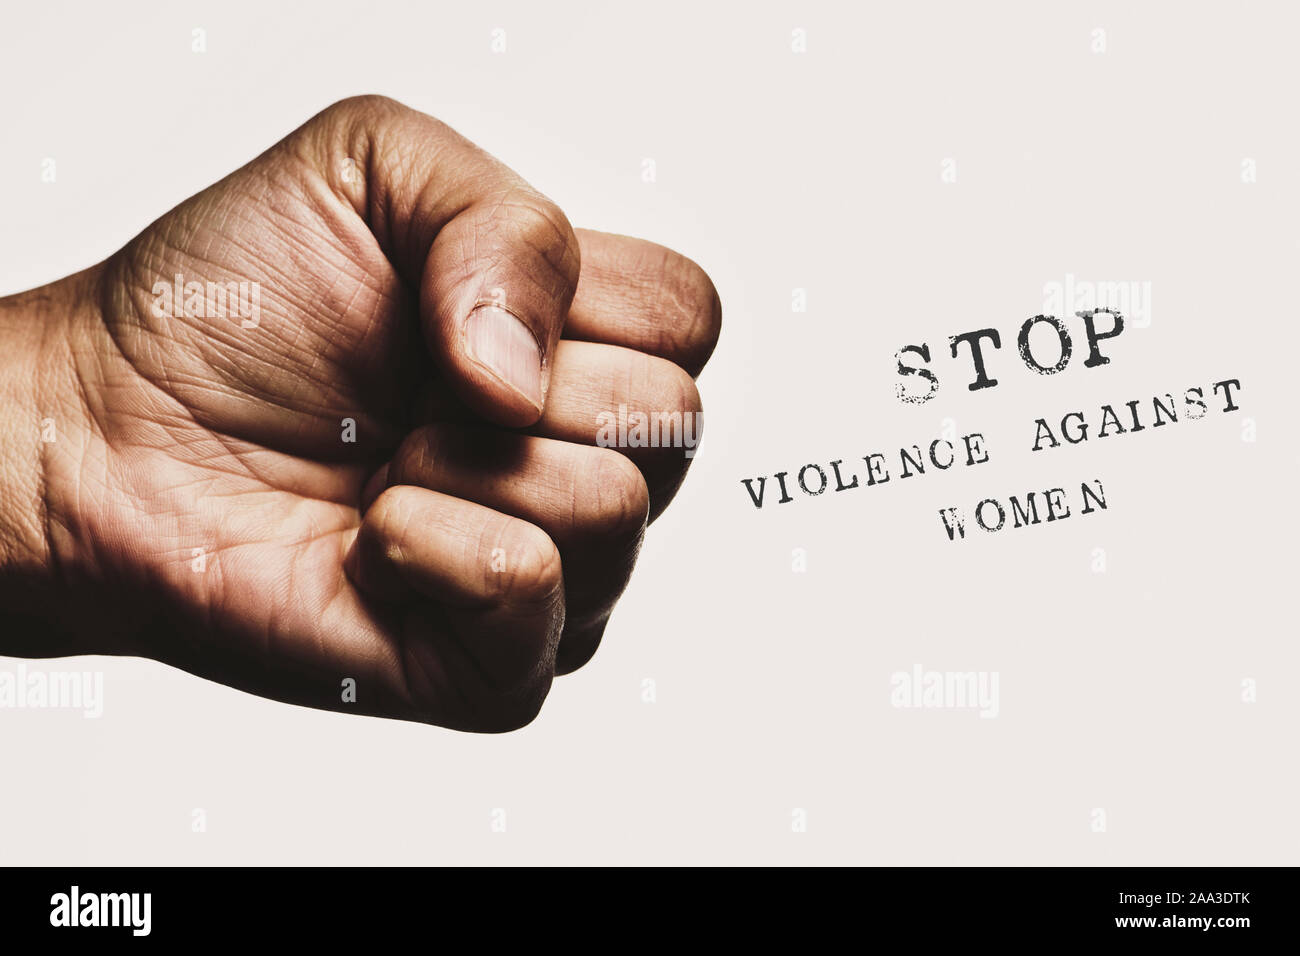 Primer plano de un hombre con el puño cerrado y amenazante el texto detener la violencia contra la mujer, contra un fondo blanco. Foto de stock